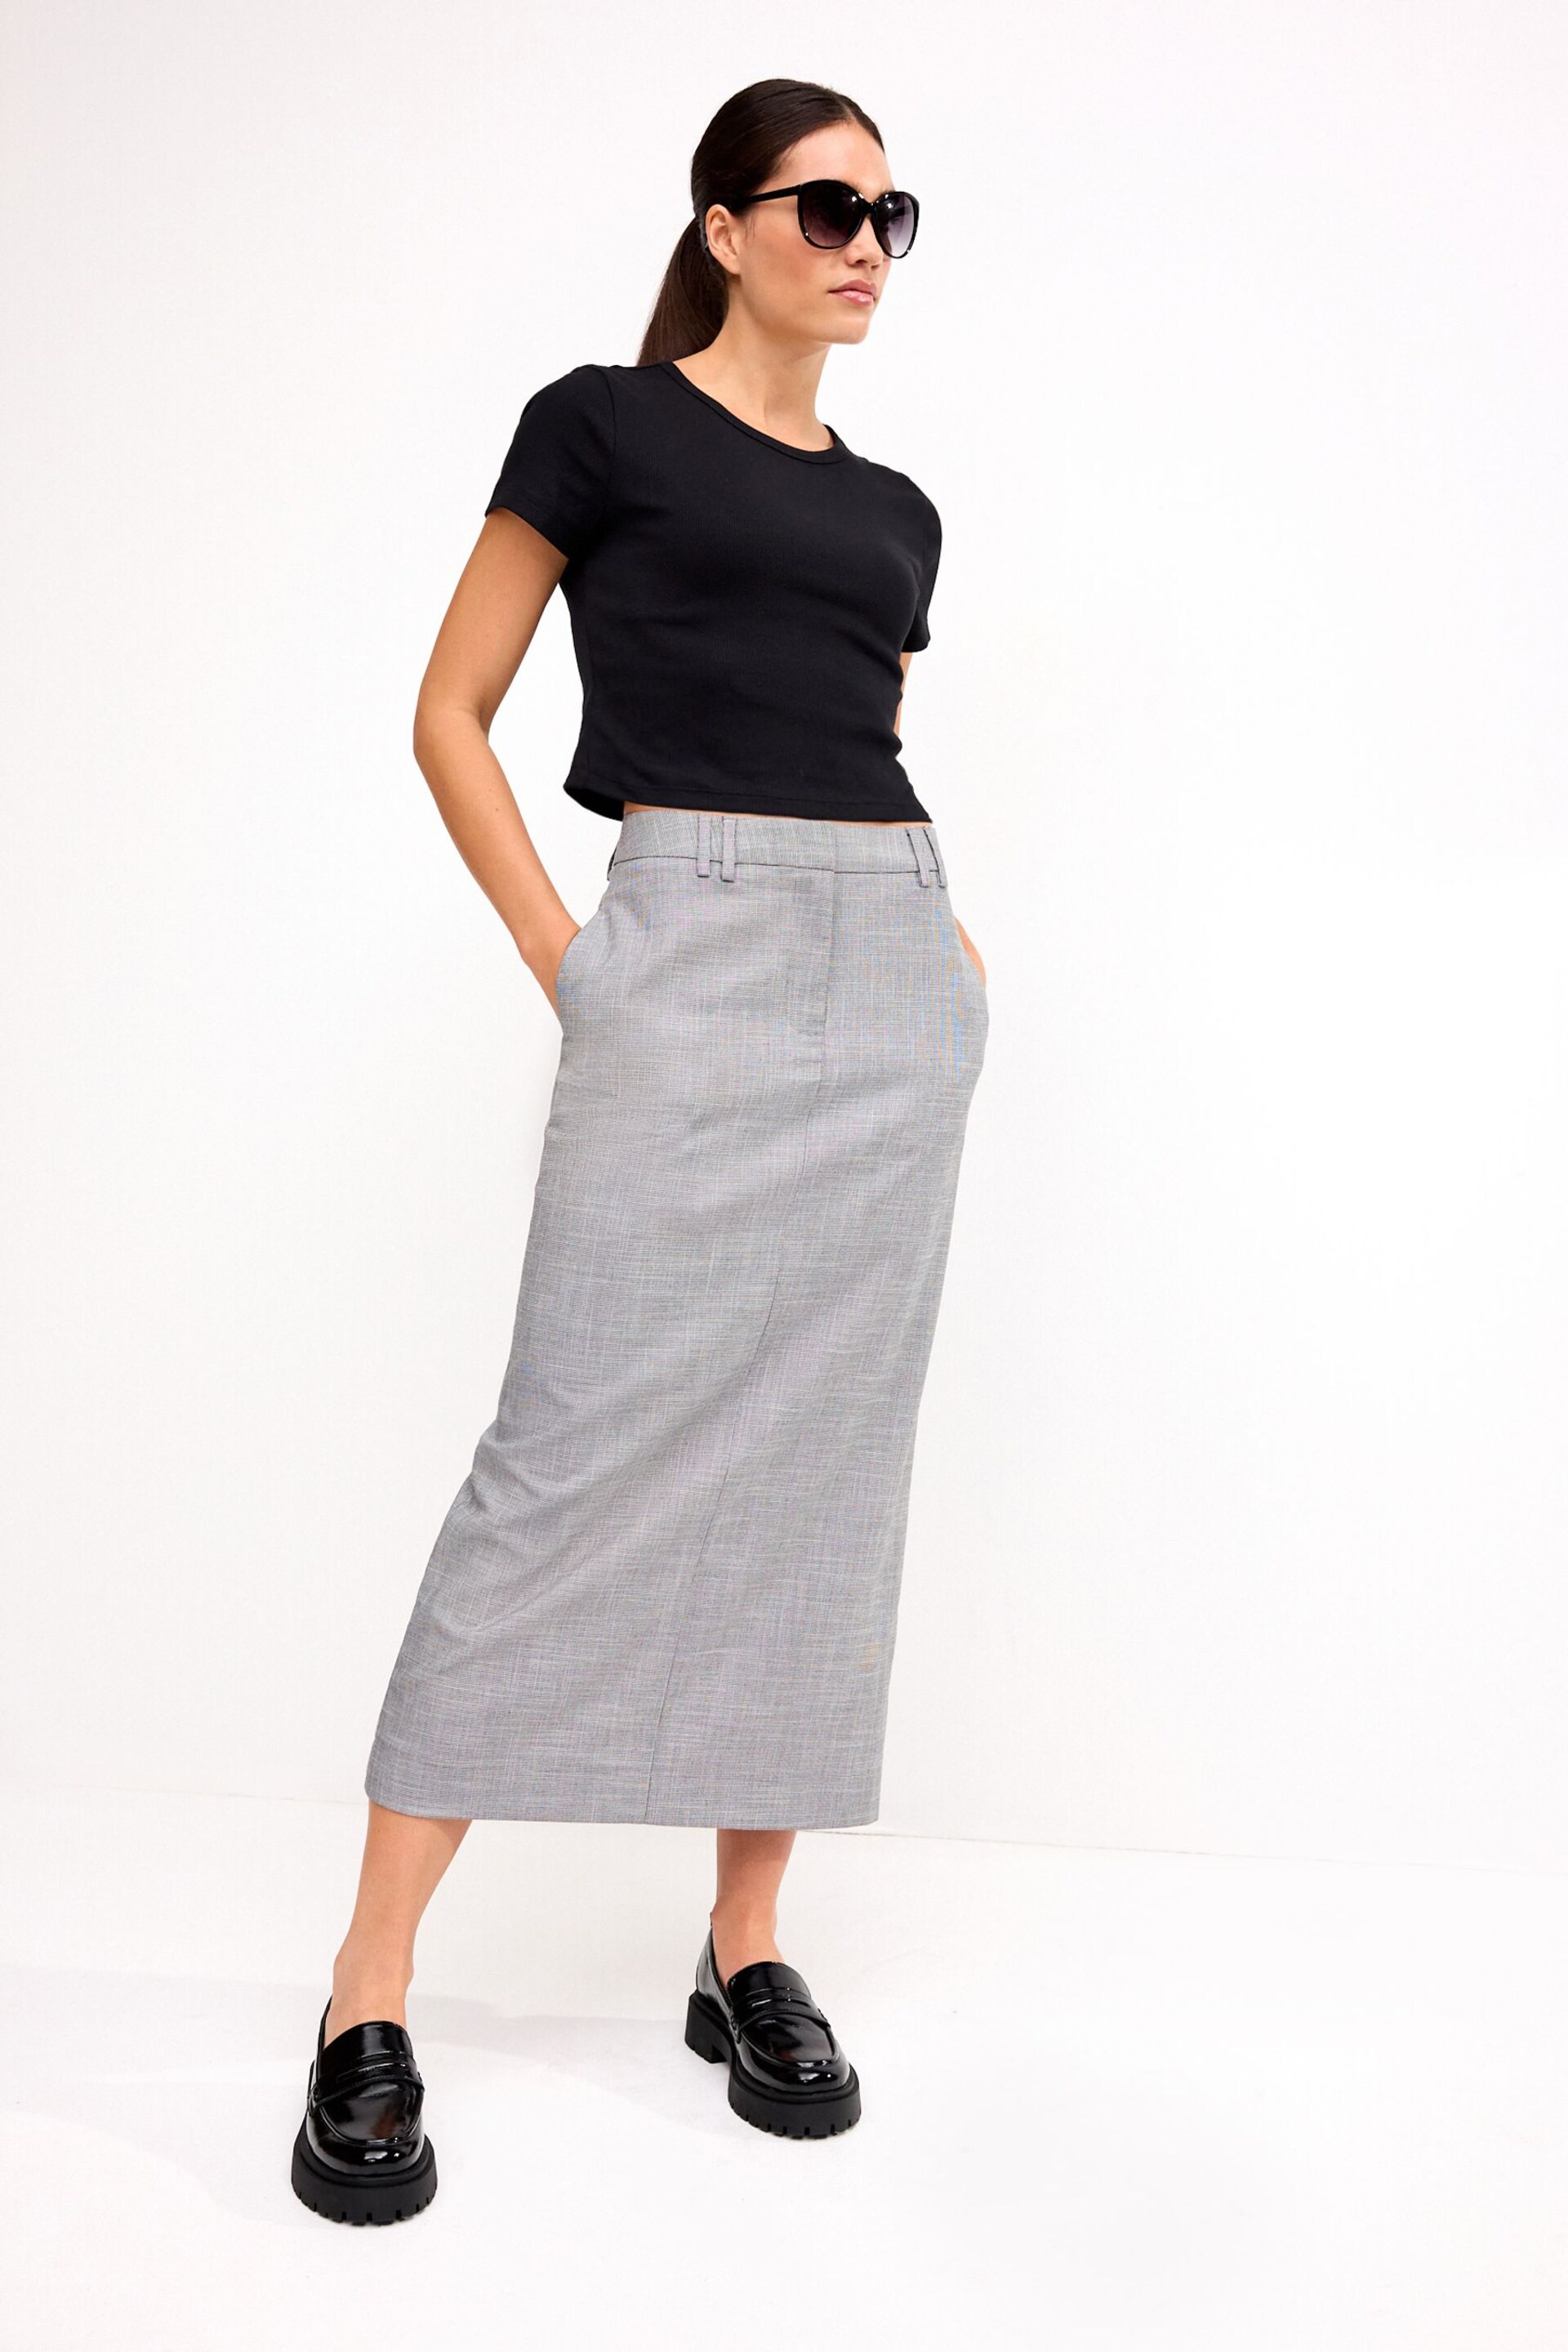 Black/White Tailored Check Column Skirt - Image 2 of 7